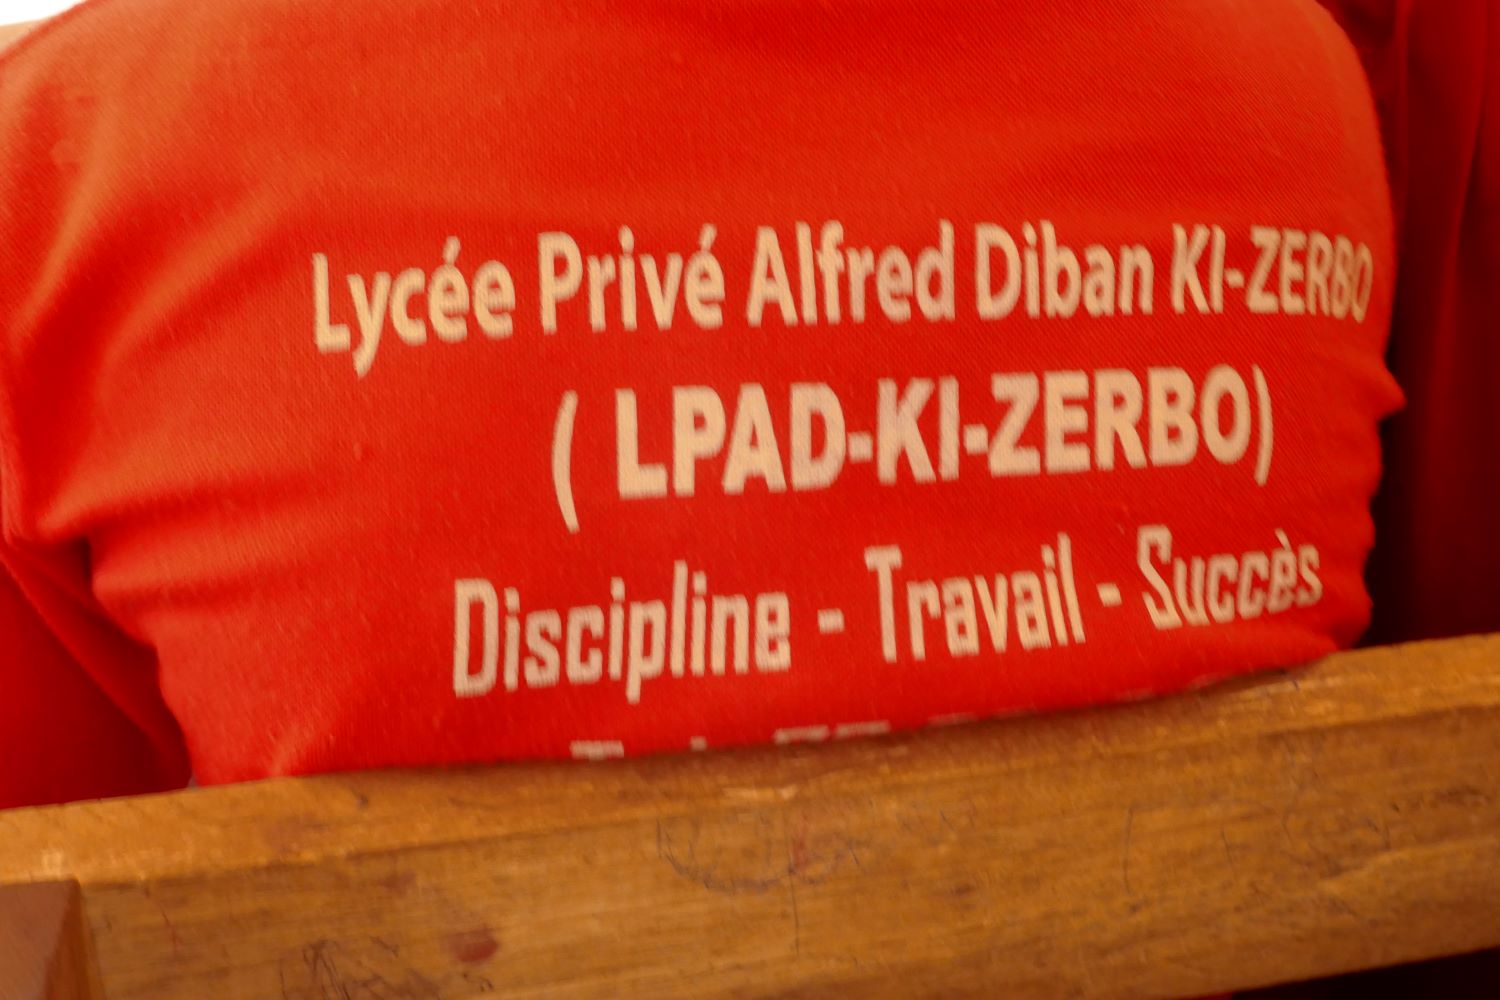 « La discipline et le travail sont les clés du succès », c’est la devise du Lycée Alfred Diban KI-ZERBO, comme on peut le lire sur le t-shirt de l’uniforme © Globe Reporters/Zabda